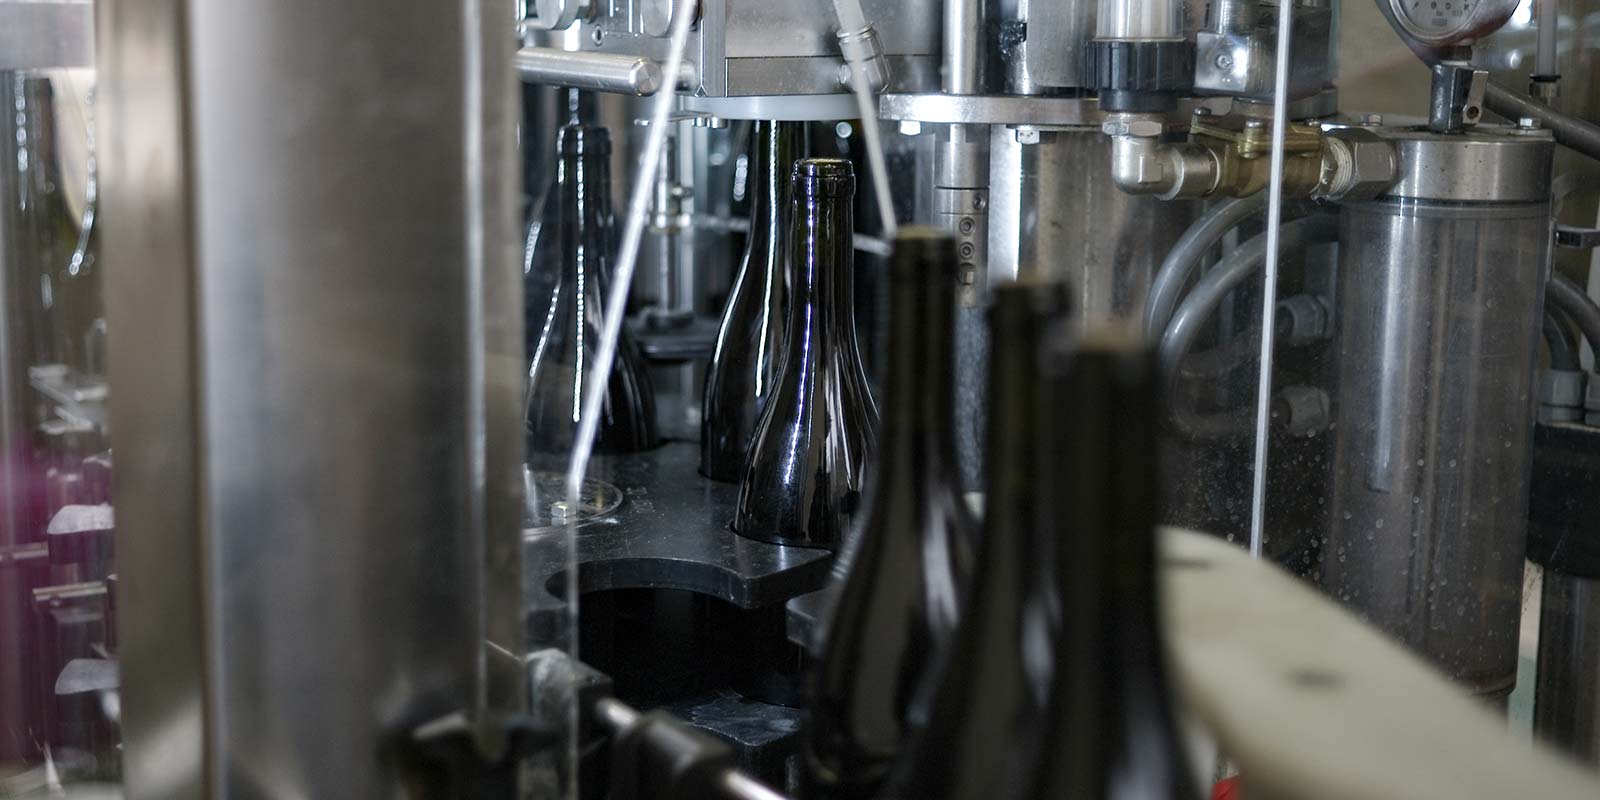 fase di imbottigliamento del vino, particolare della macchina e le bottiglie